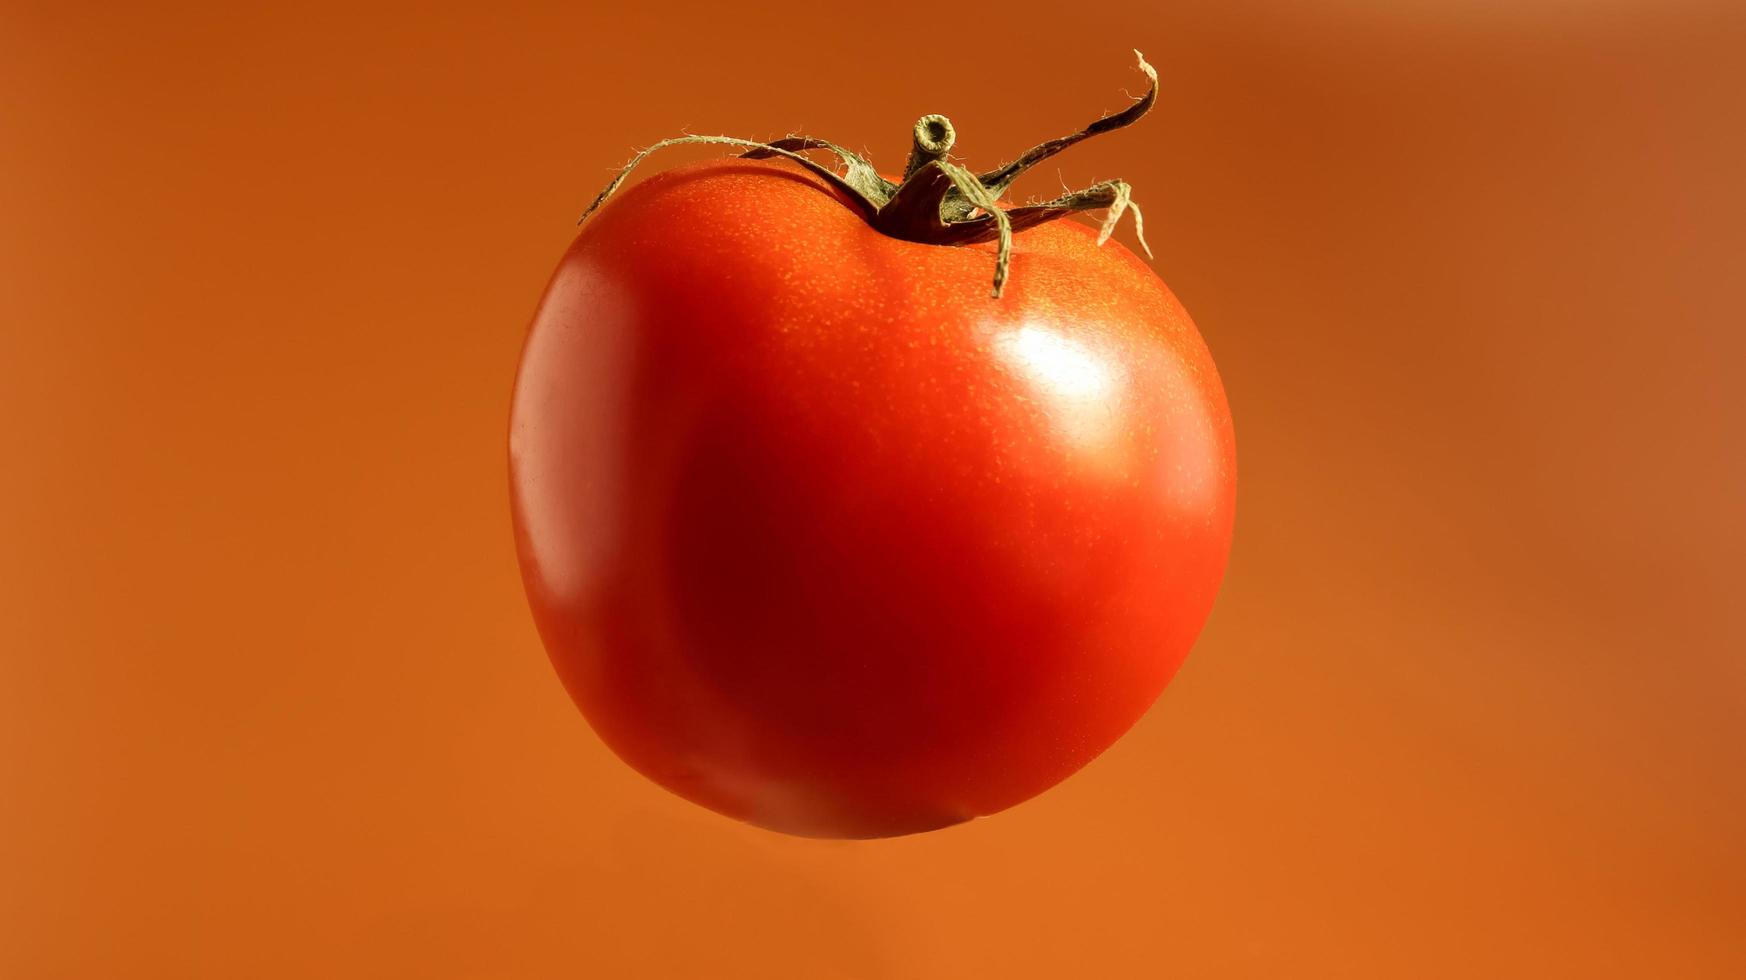 une tomate rouge fraîche et savoureuse. baie multicellulaire juteuse. une herbe annuelle ou vivace. culture végétale. tomate juteuse avec tige verte. photo